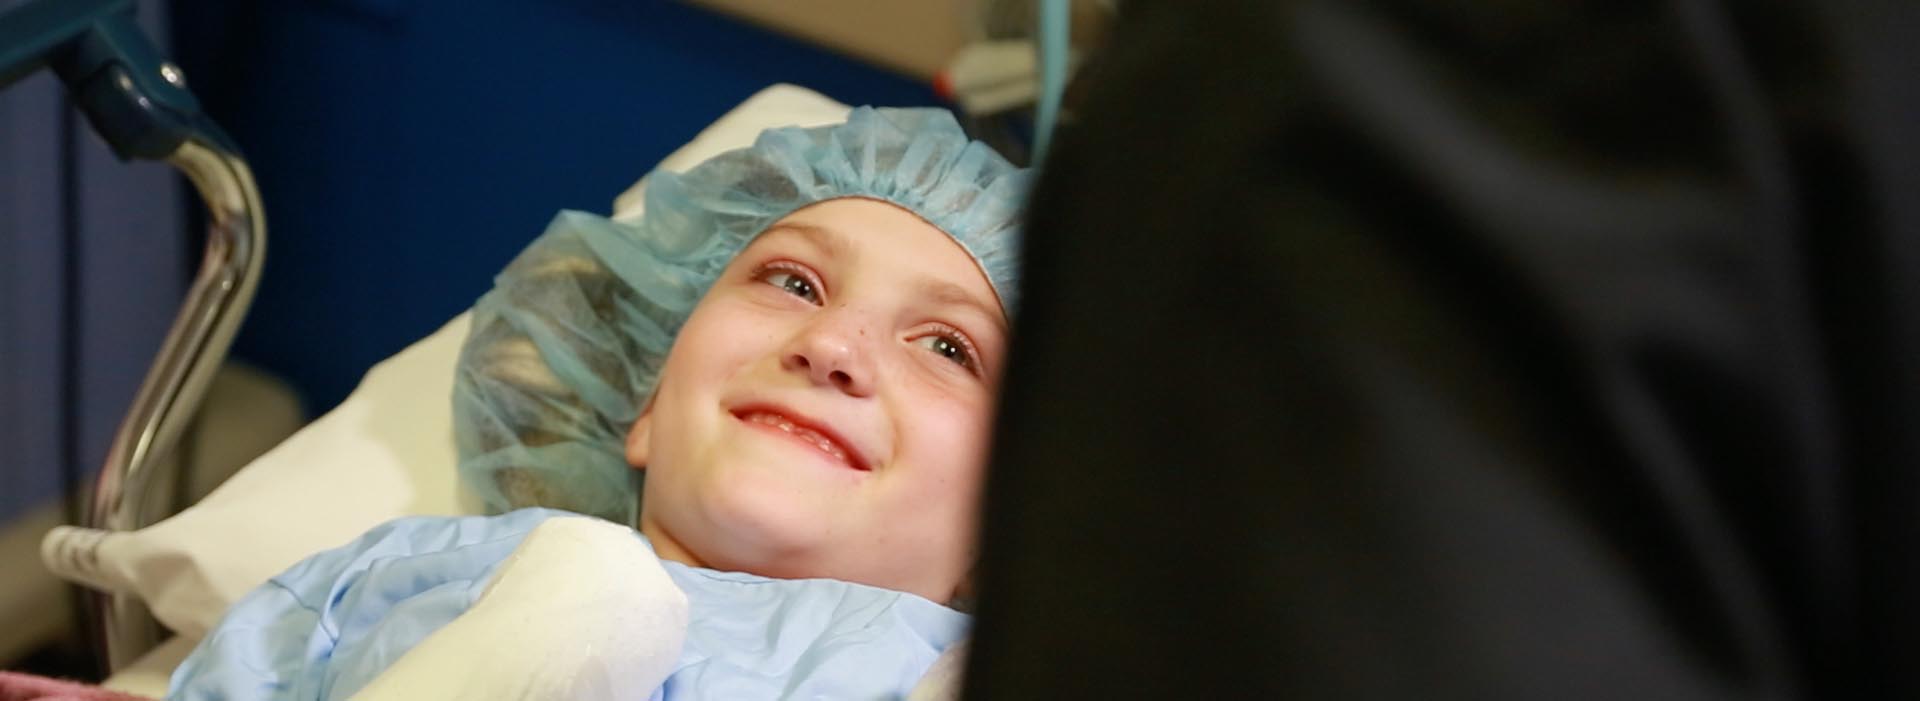 Un jeune enfant patient sourit à quelqu'un hors cadre